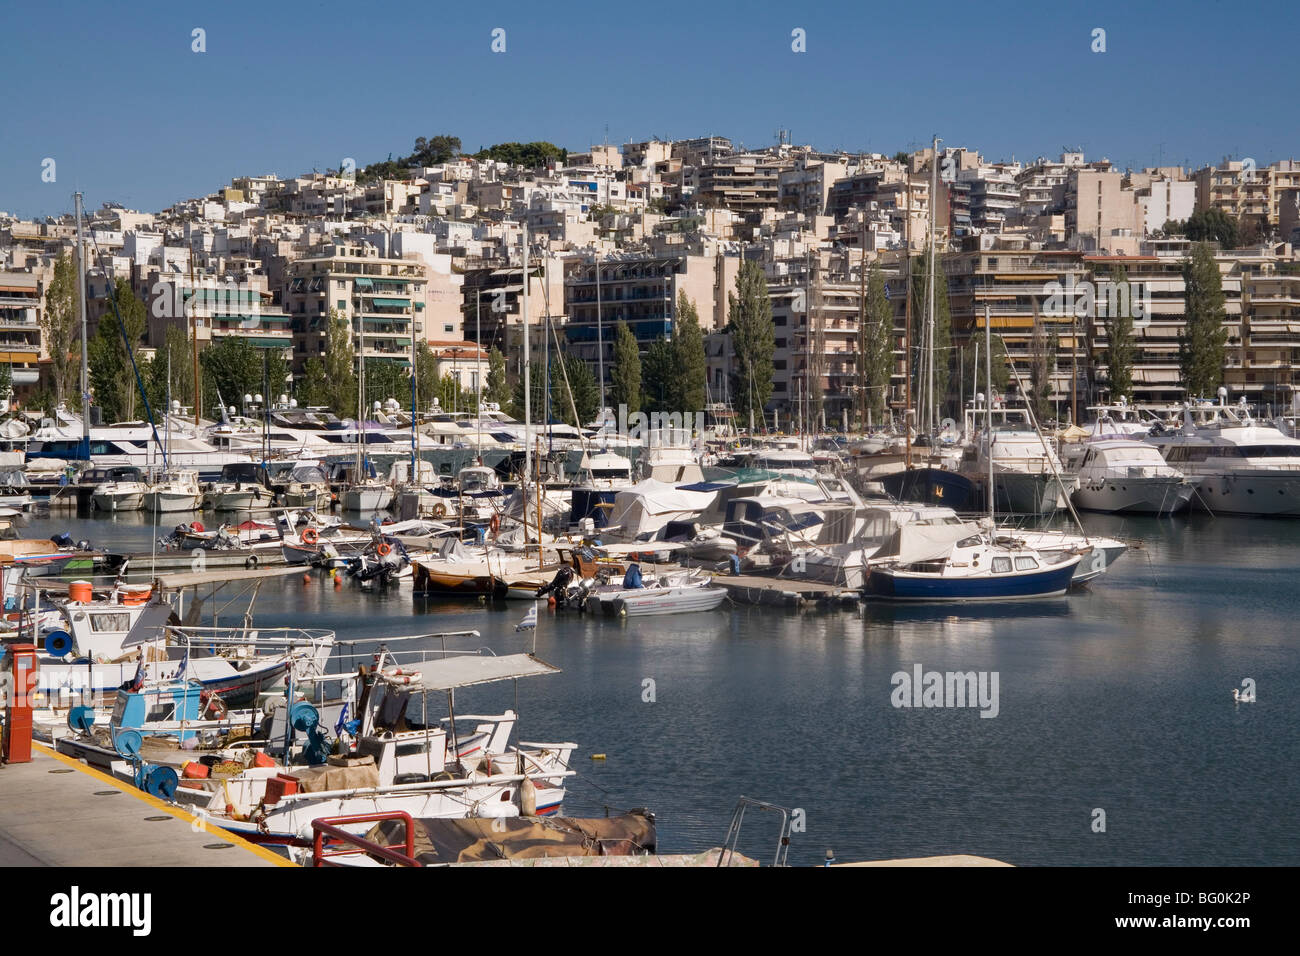 Zea marina, Le Pirée, Athènes, Grèce, Europe Banque D'Images